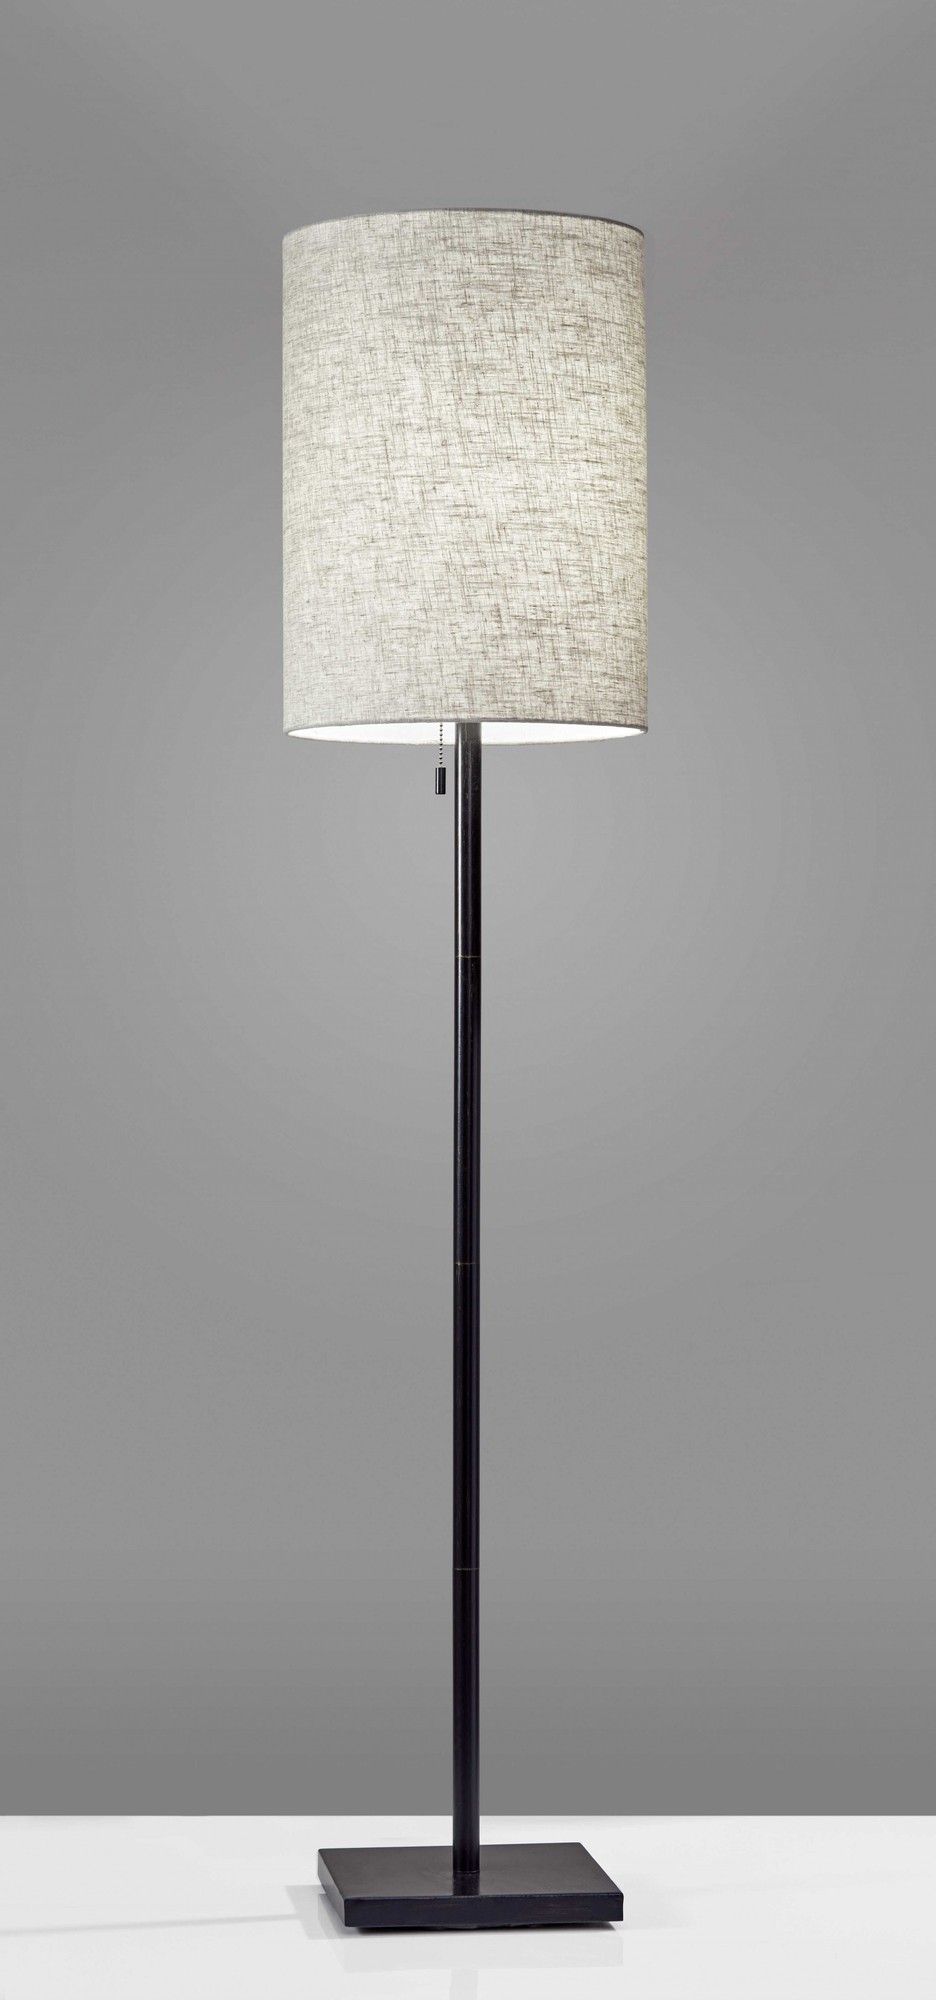 13" X 13" X 60.5" Bronze Metal Floor Lamp